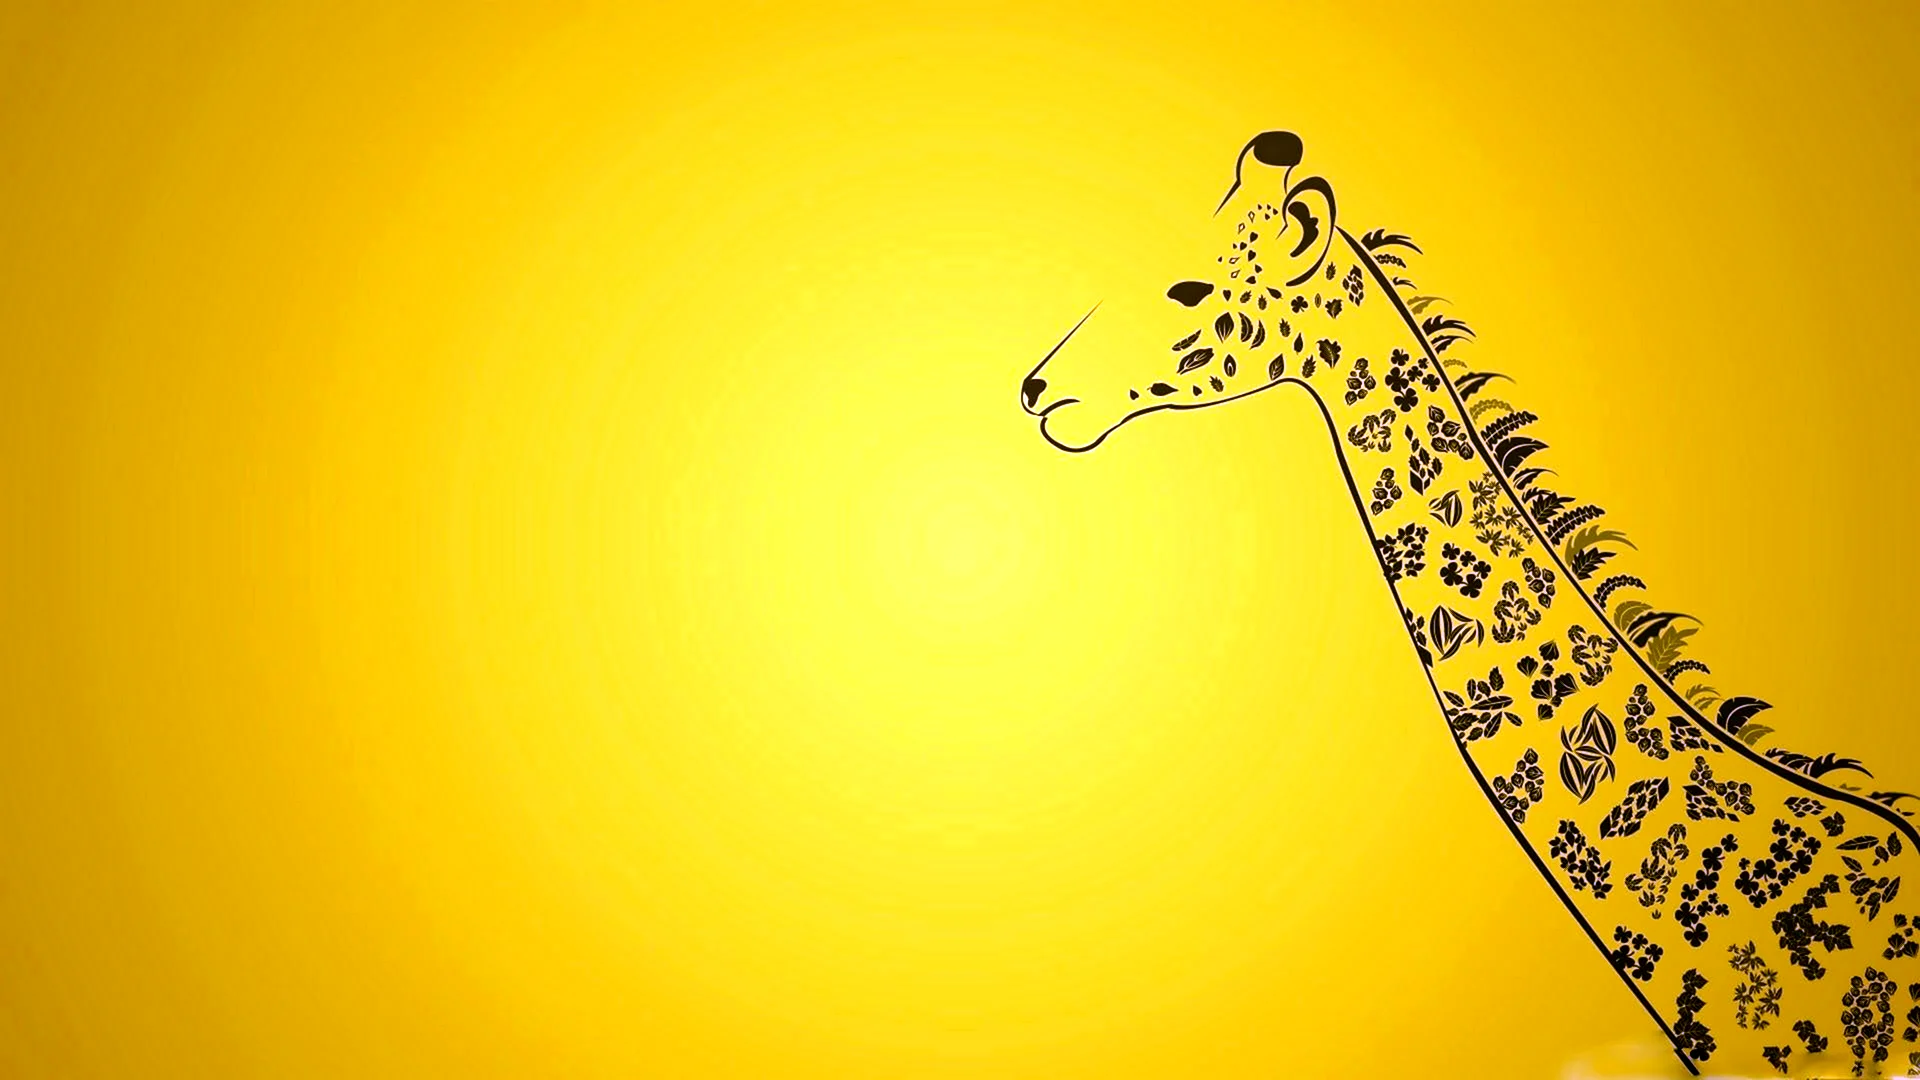 Обои с жирафами